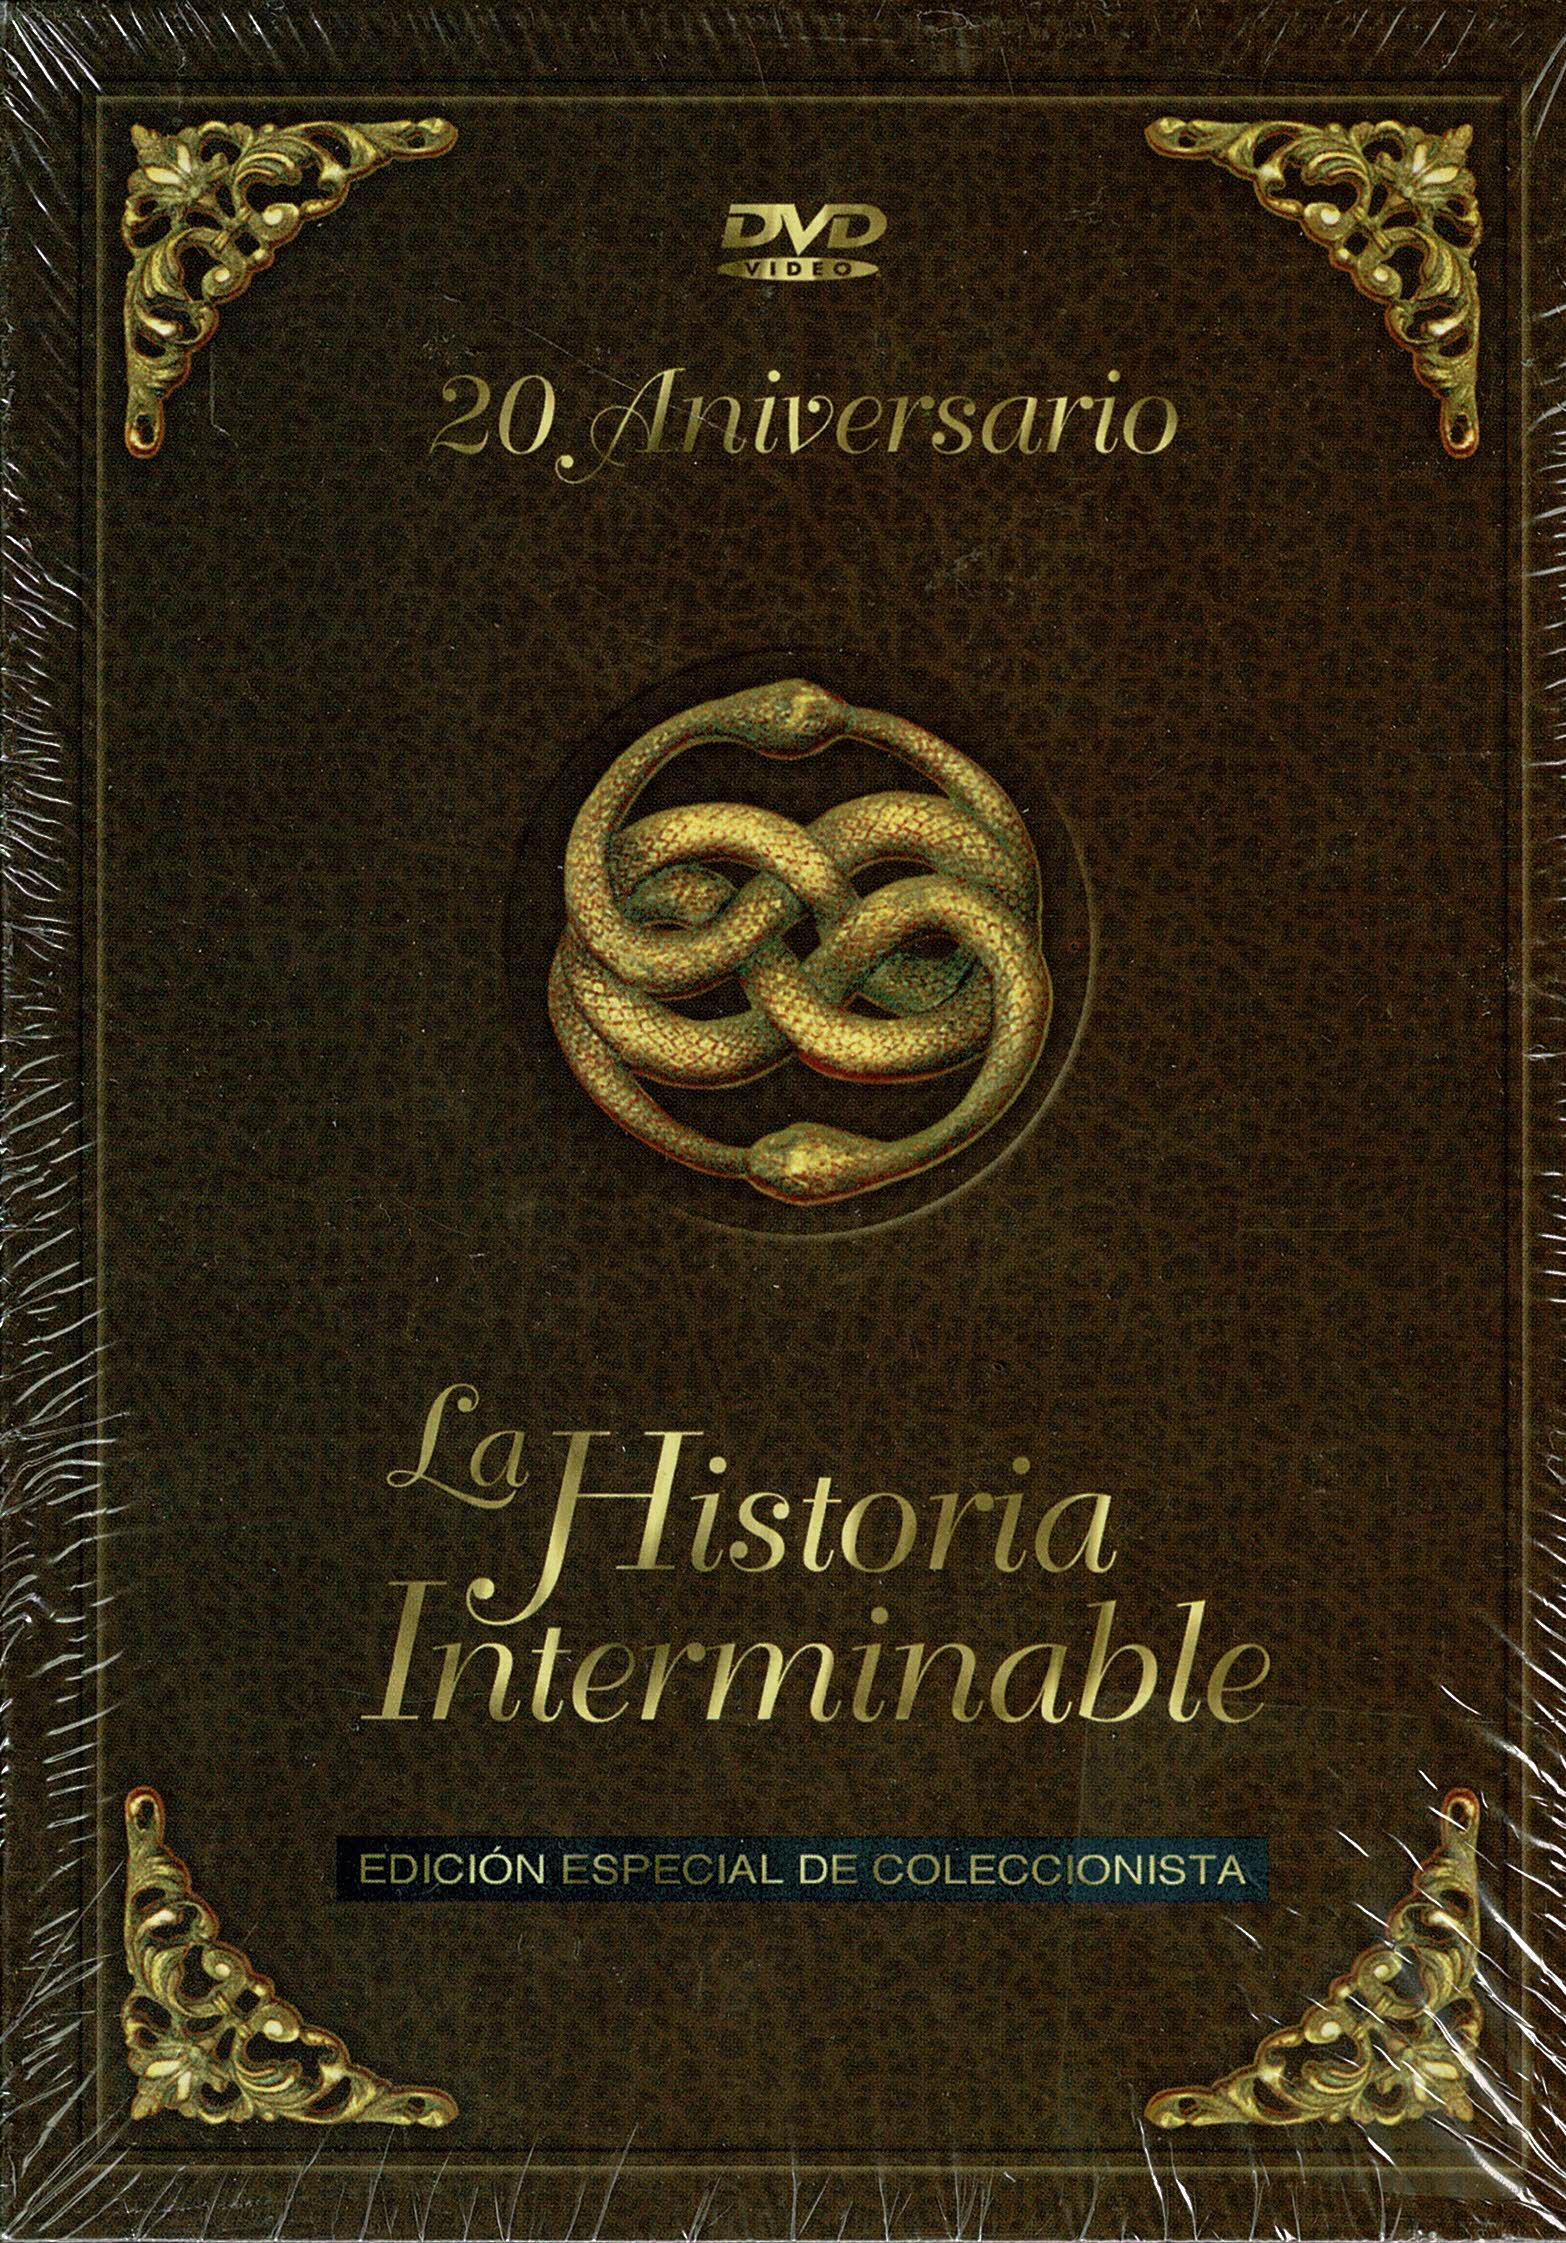  La Historia Interminable (Ed. Coleccionista) - Audio: Spanish -  Region 2 - Spain Import : Películas y TV